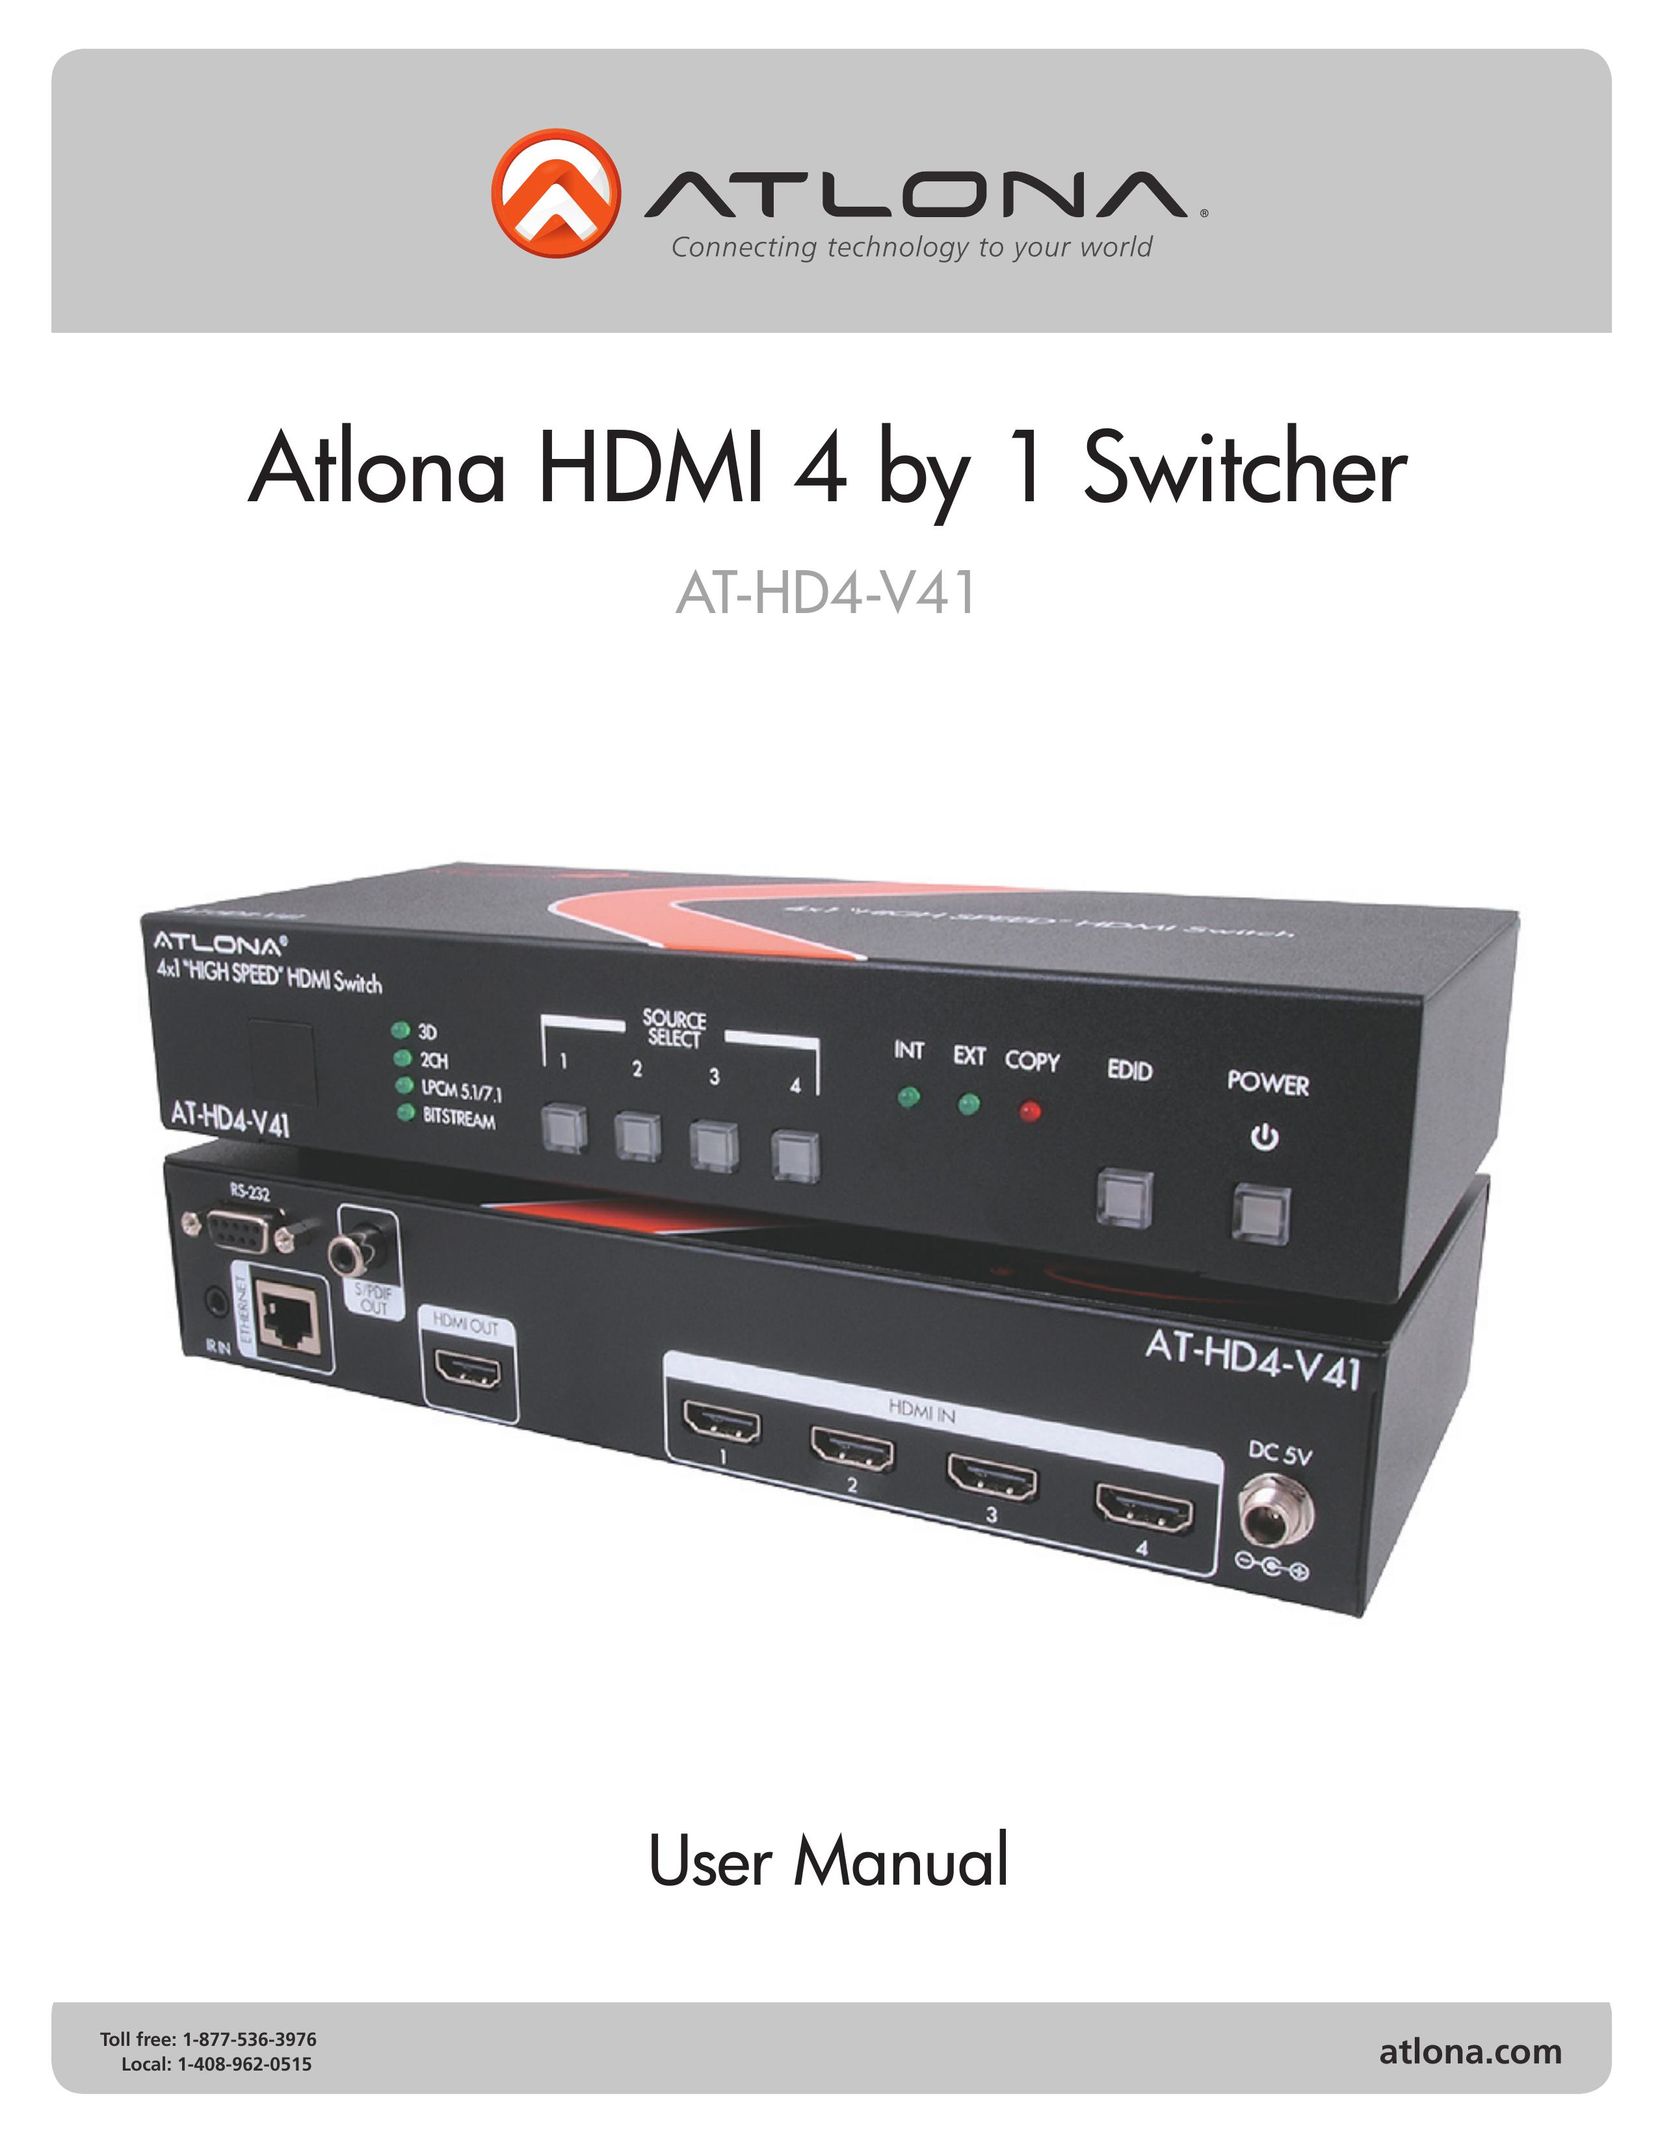 Atlona AT-HD4-V41 TV Cables User Manual